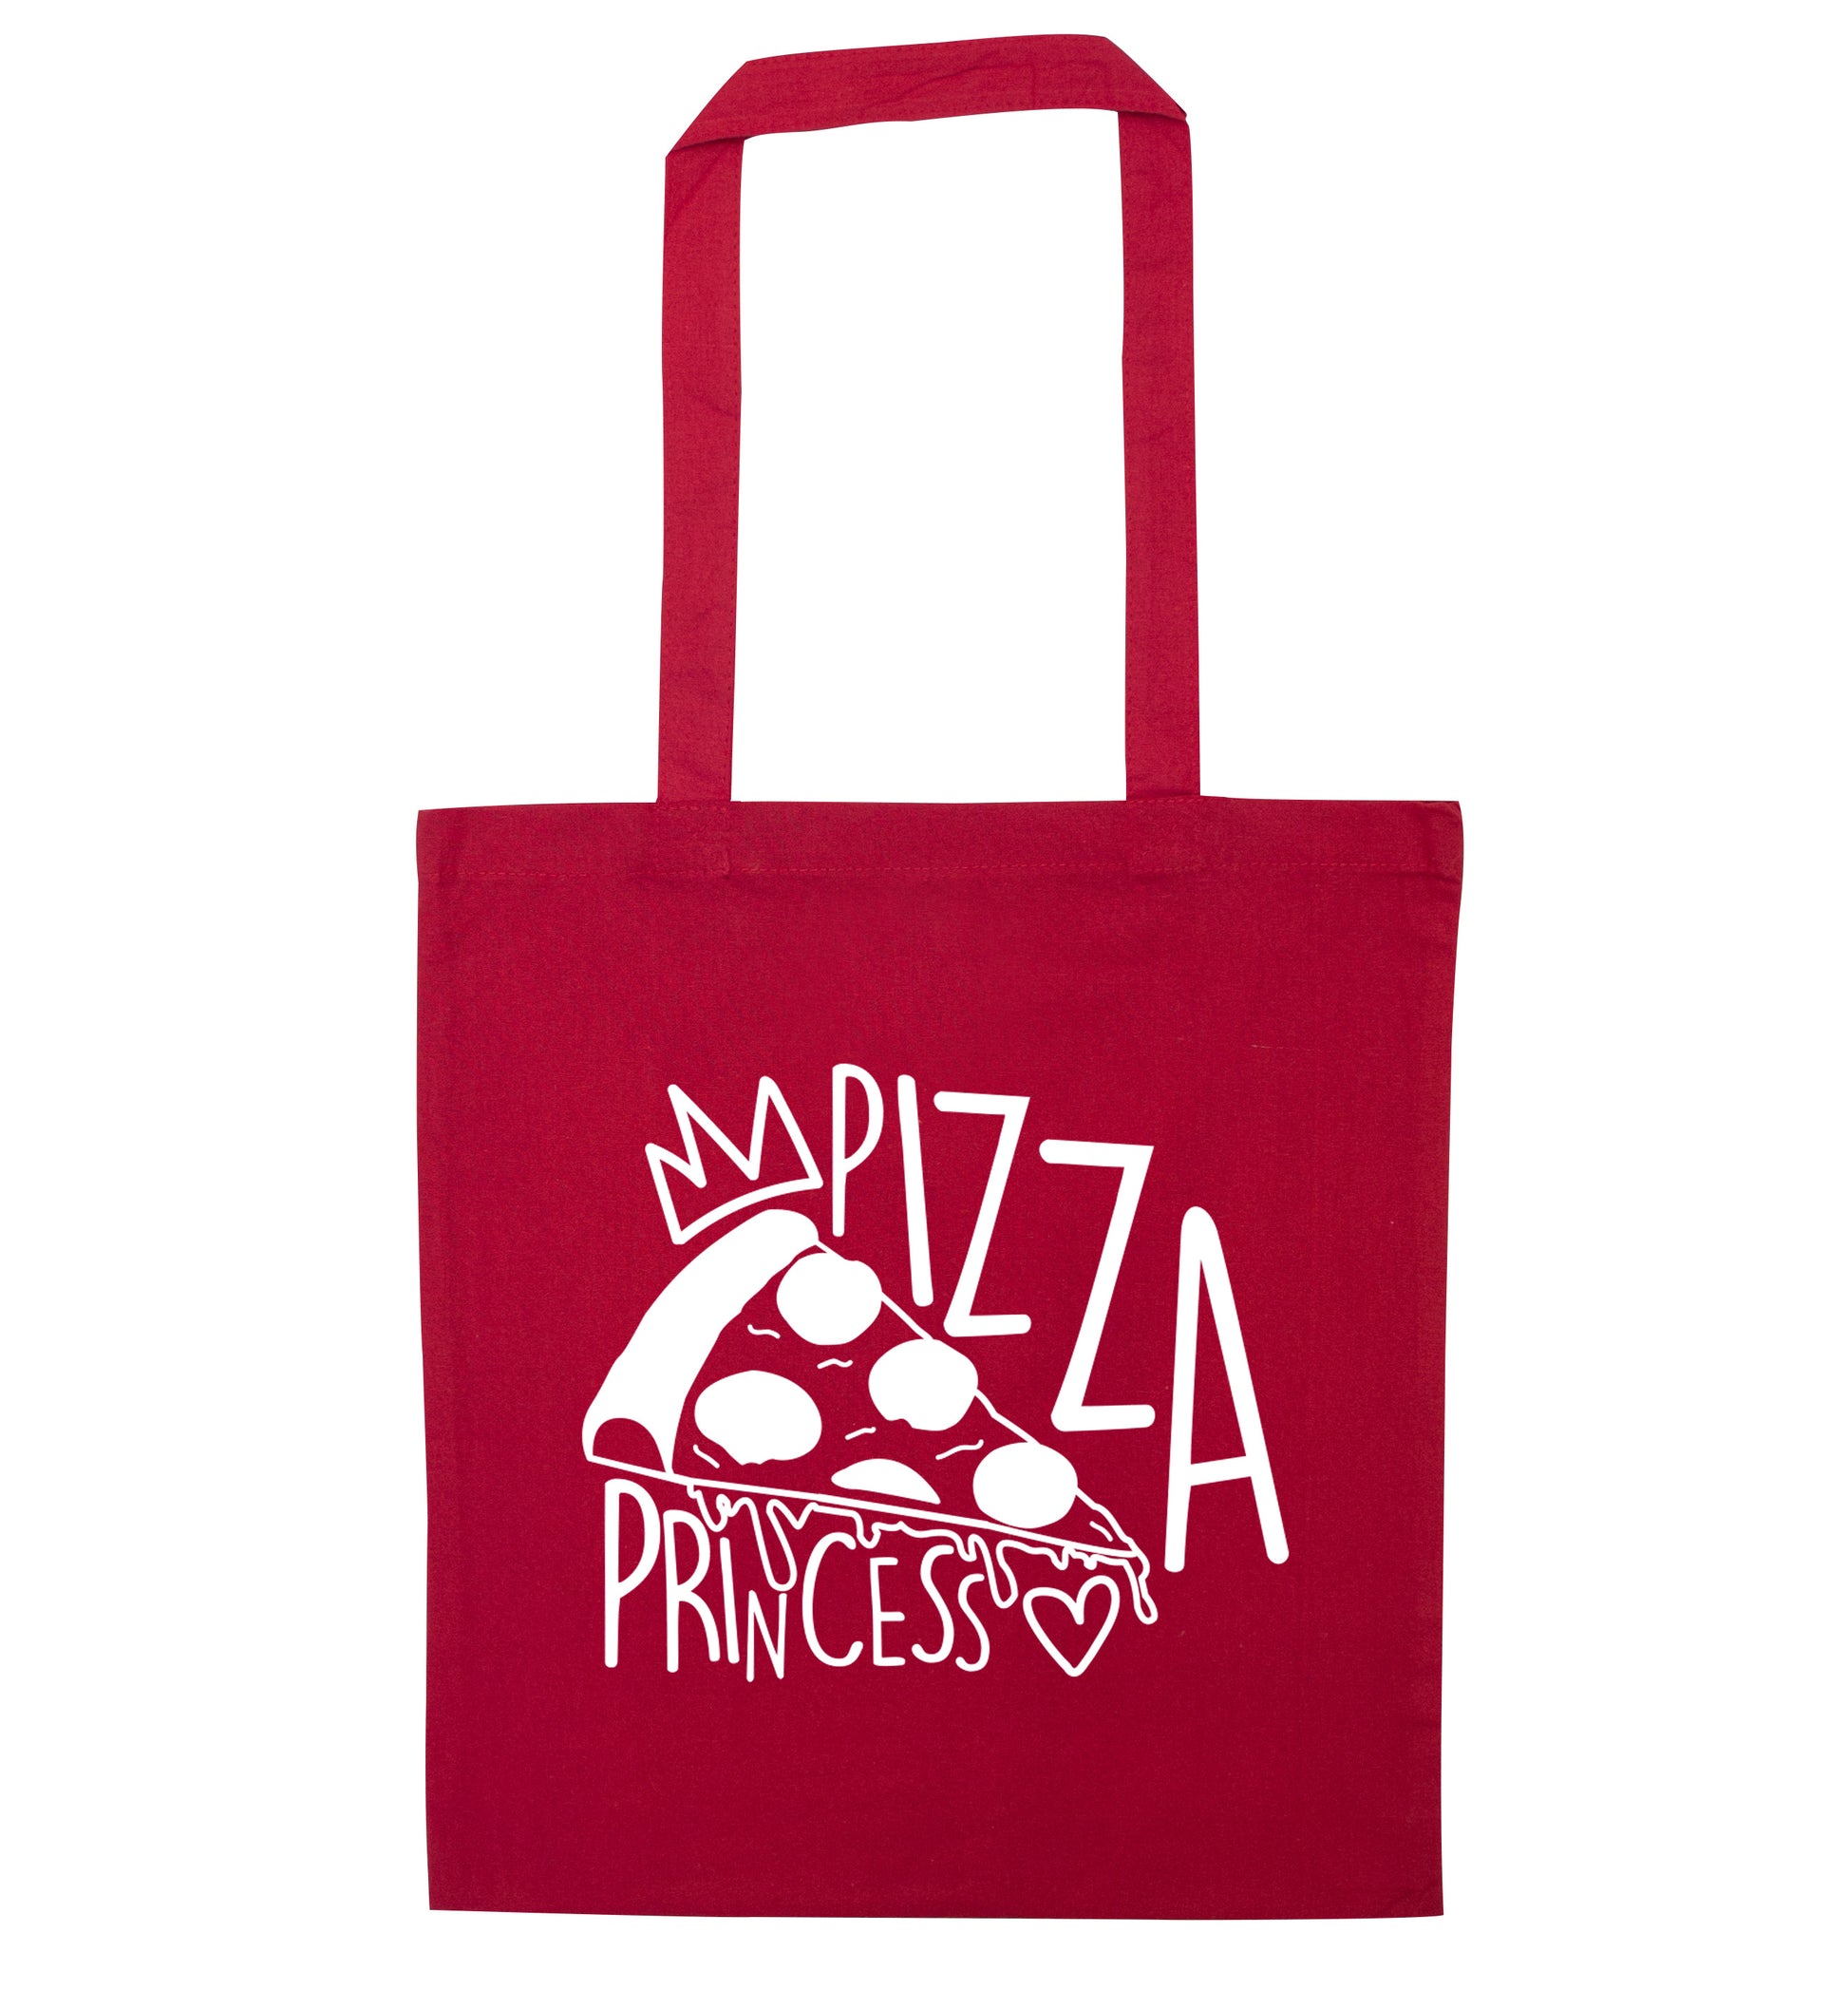 Pizza Princess red tote bag